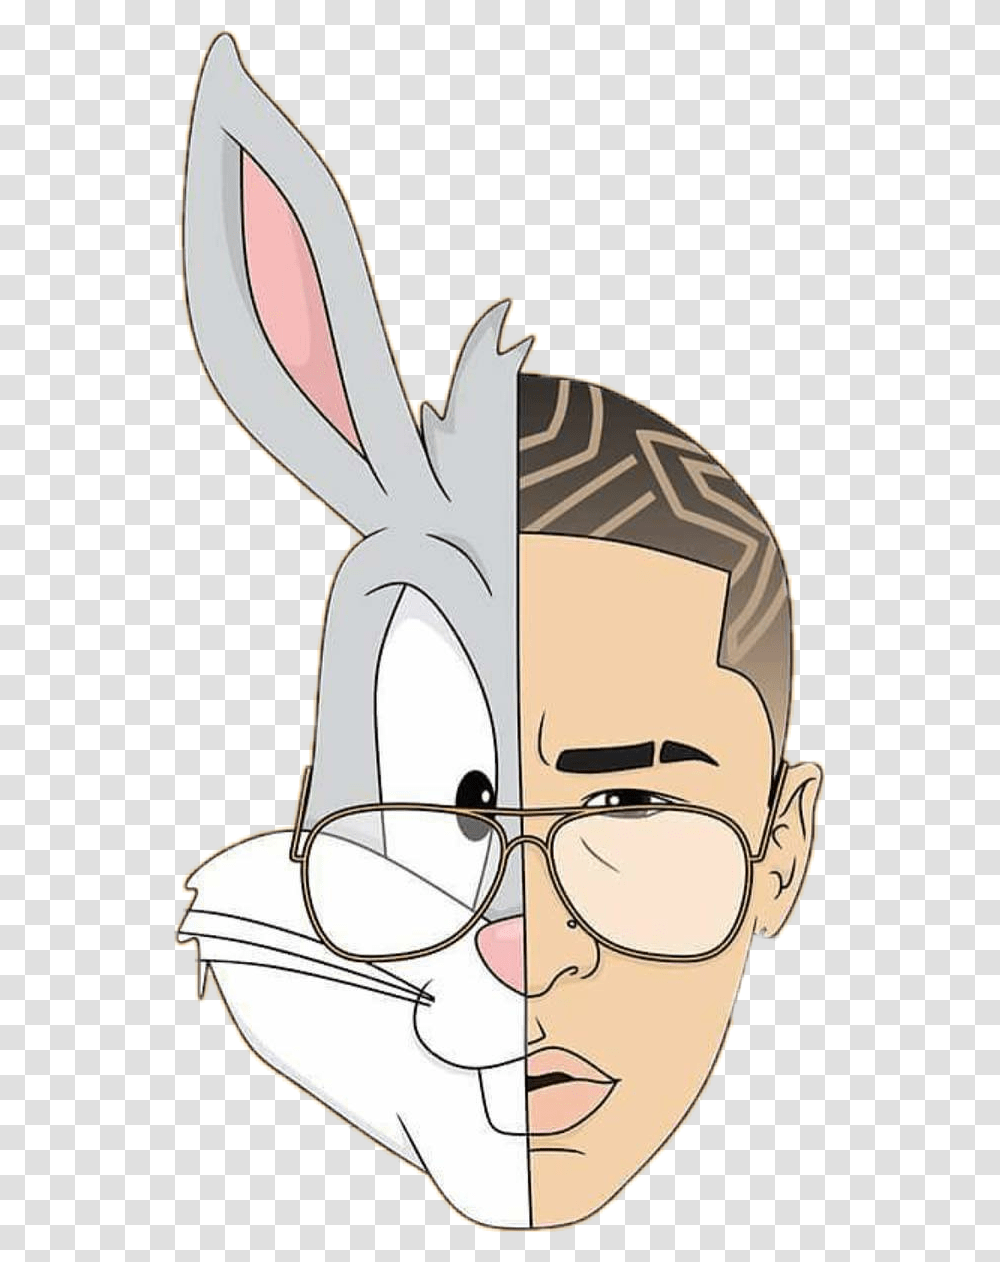 Bad Bunny Conejo Malo Dibujos De Bad Bunny, Head, Face, Mammal, Animal Transparent Png